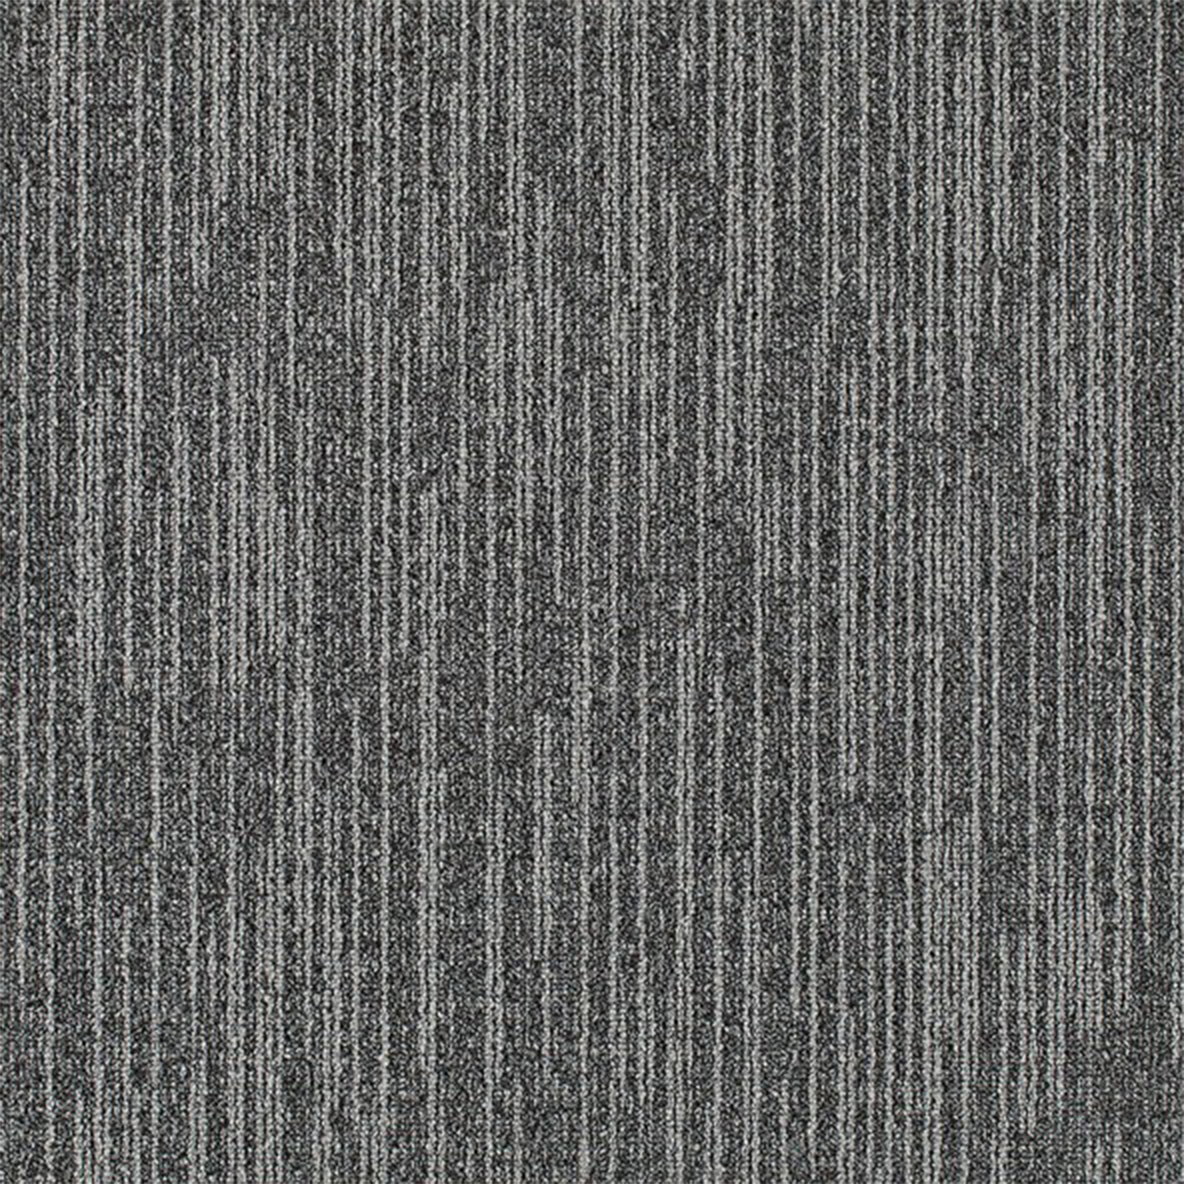 Overdirve Commercial Carpet Tile .30 Inch x 50x50 cm per Tile Leaden color close up